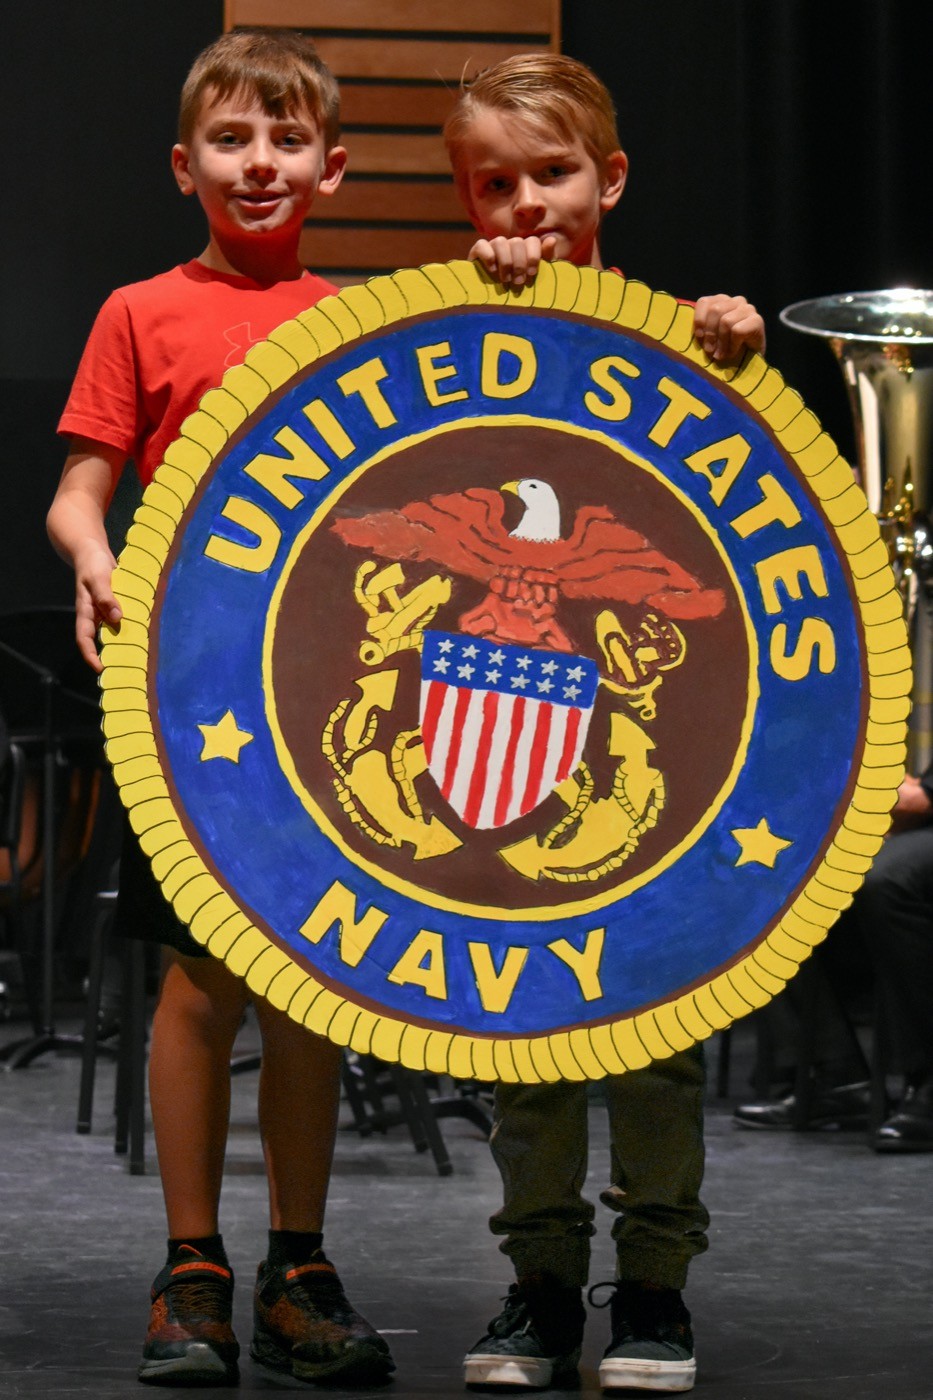 US Navy emblem